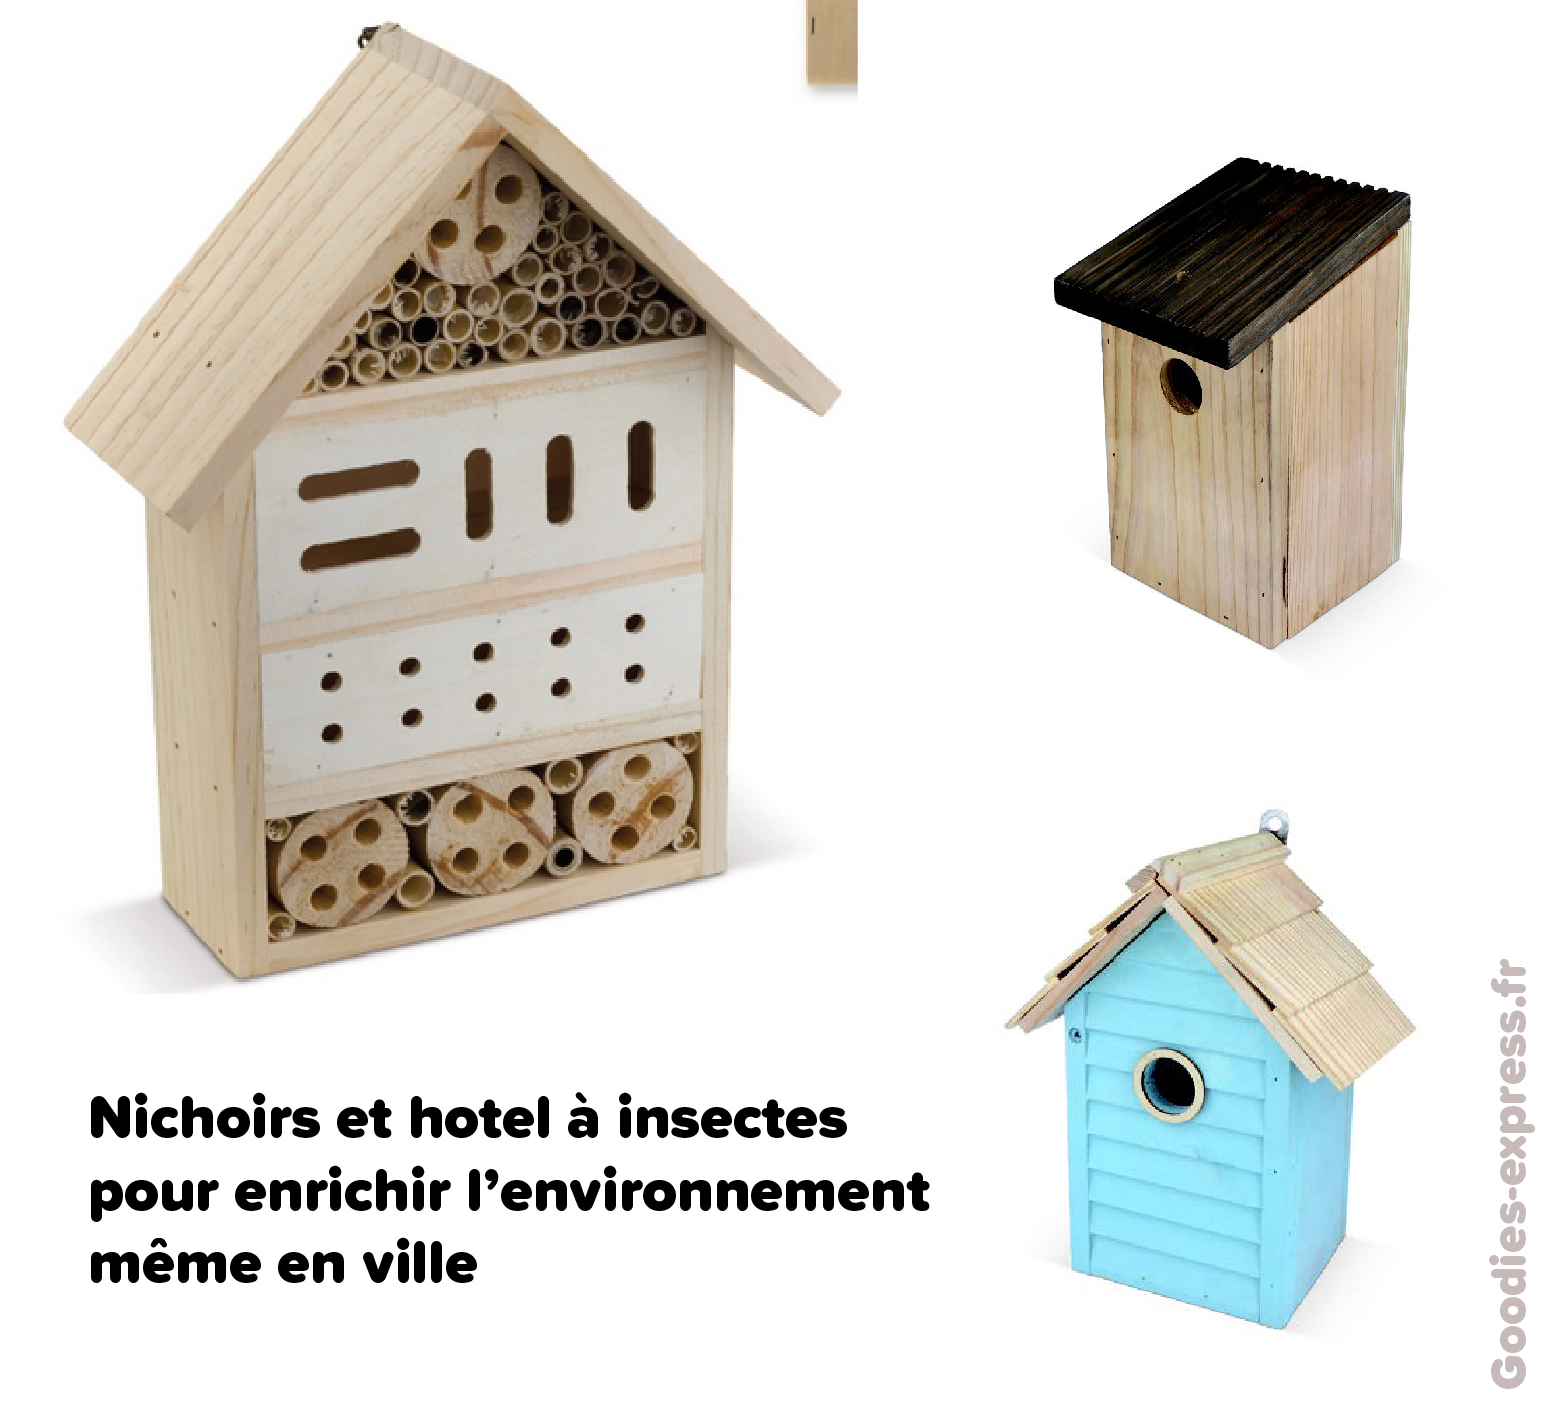 Objet pub écolo Nichoirs et hotel a insectes-01